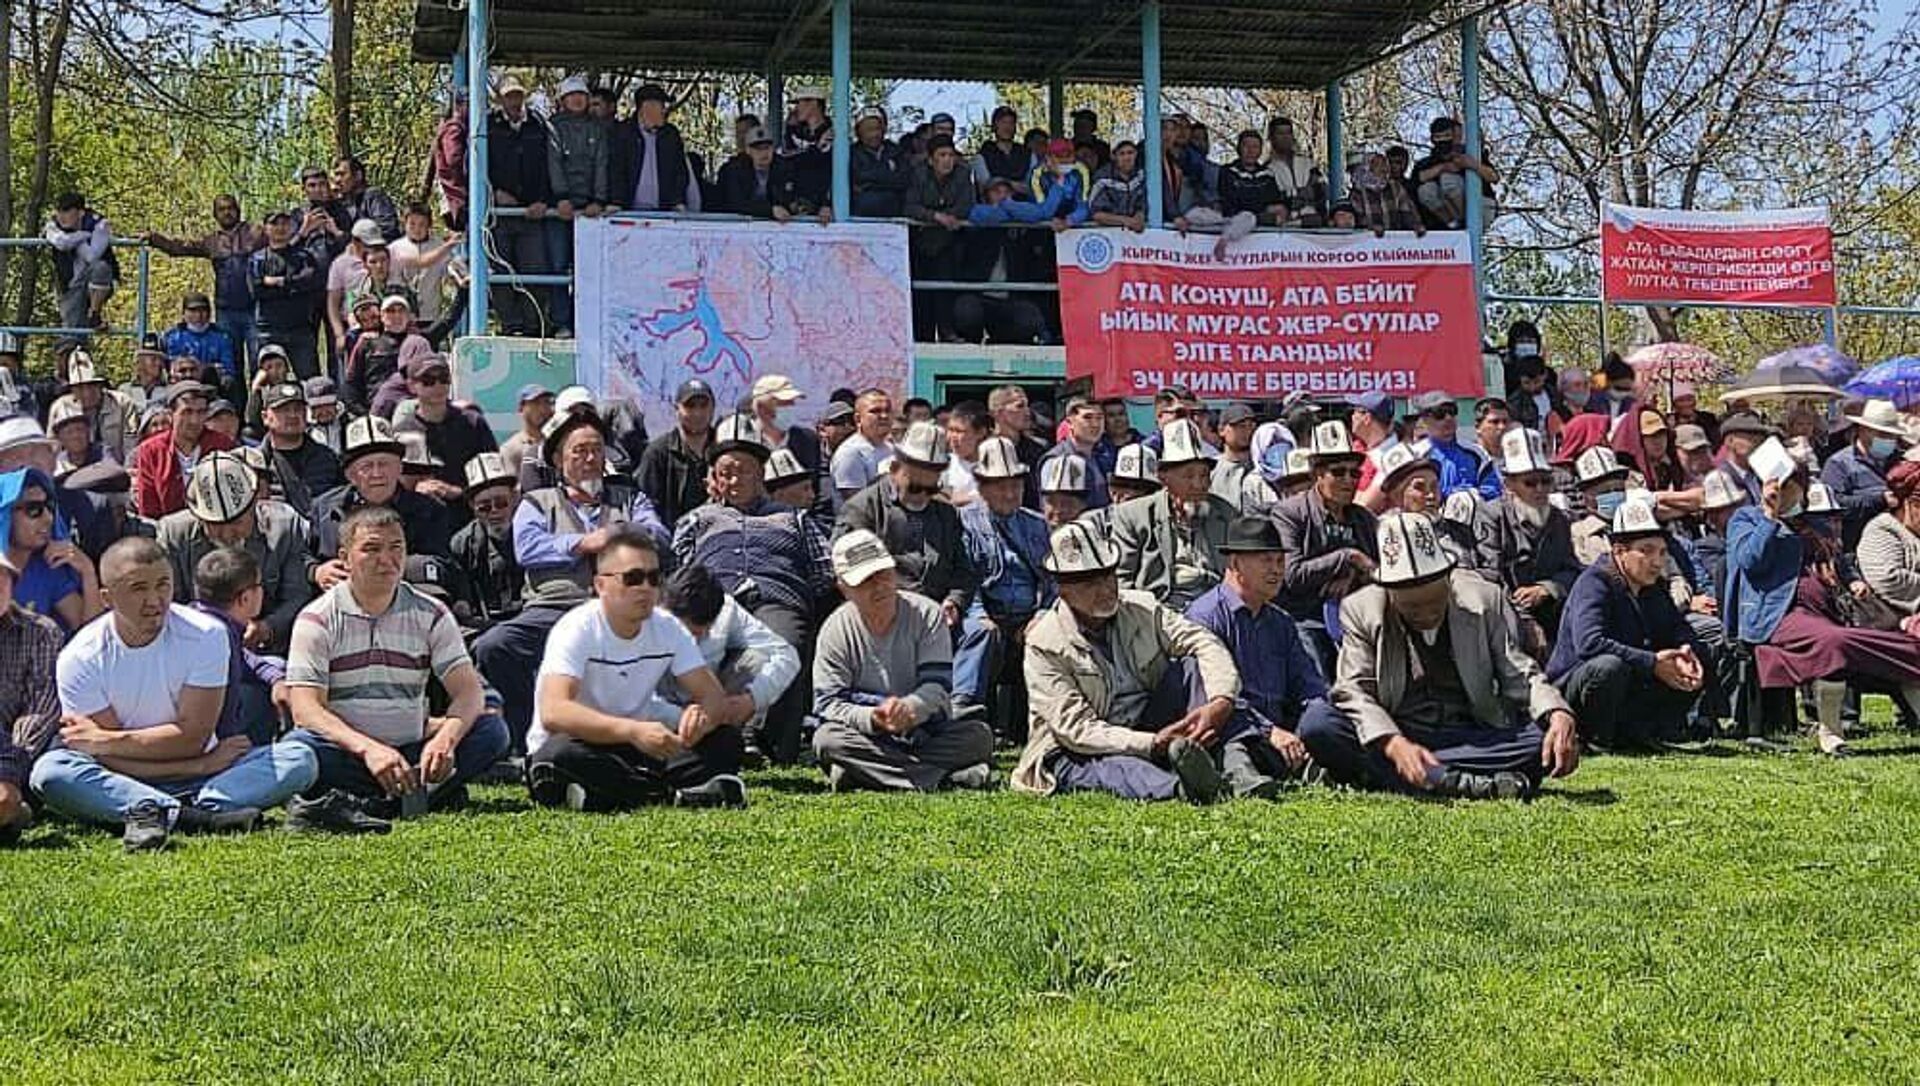 Митинг против передачи земли вокруг Кемпир-Абадского водохранилища Узбекистану в Узгенском районе - Sputnik Кыргызстан, 1920, 25.04.2021